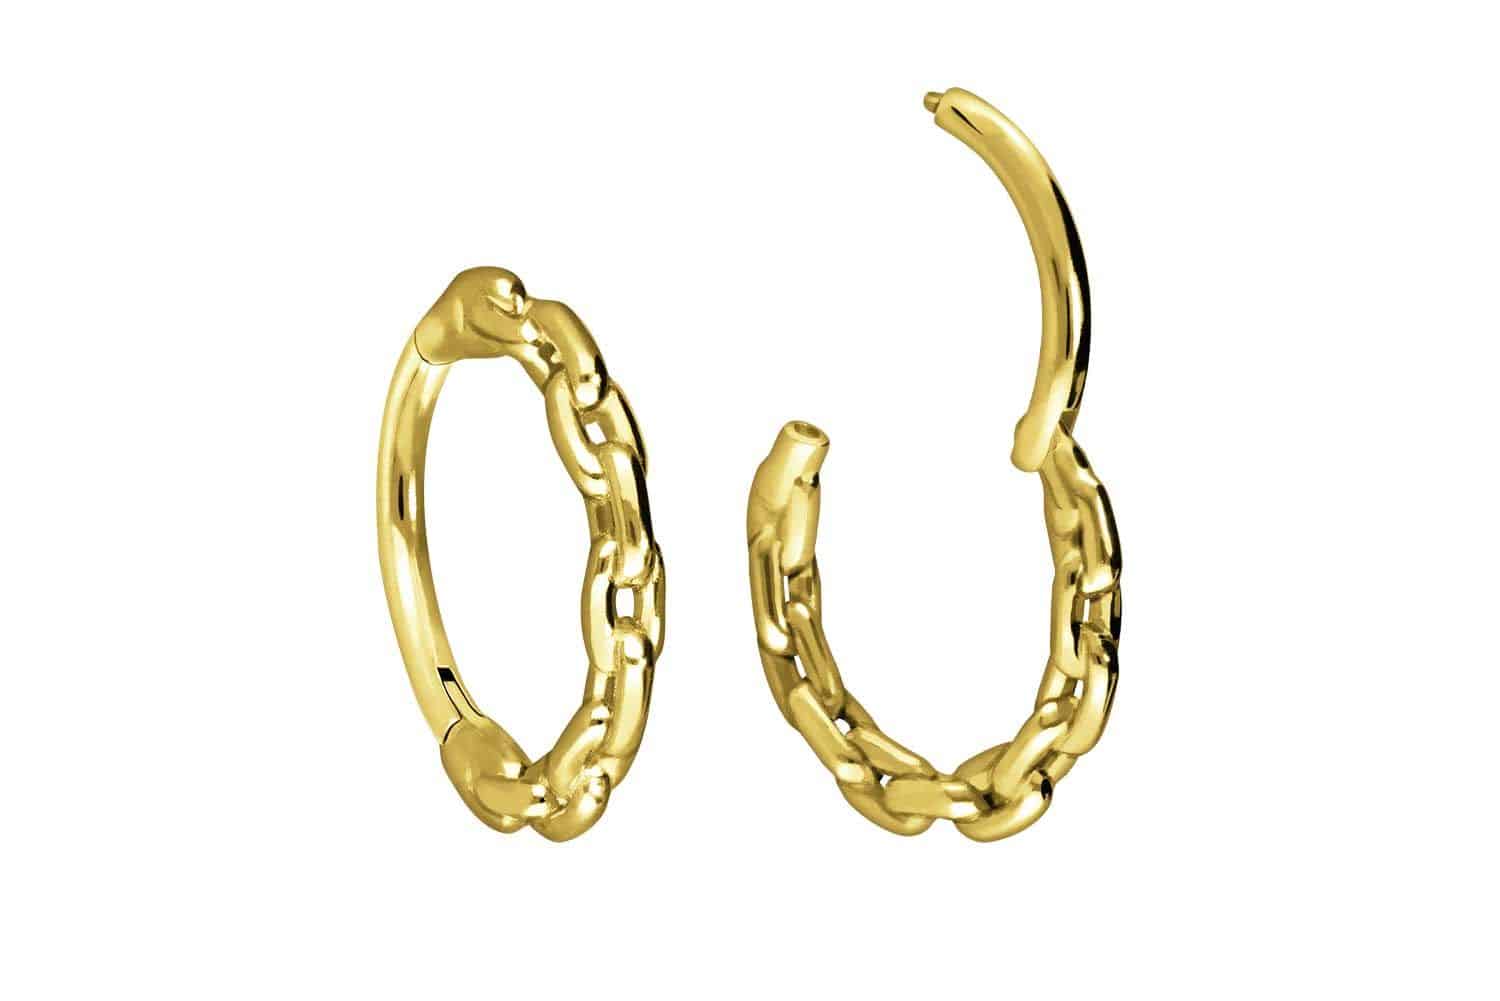 18 carat gold segment ring clicker CHAIN DESIGN